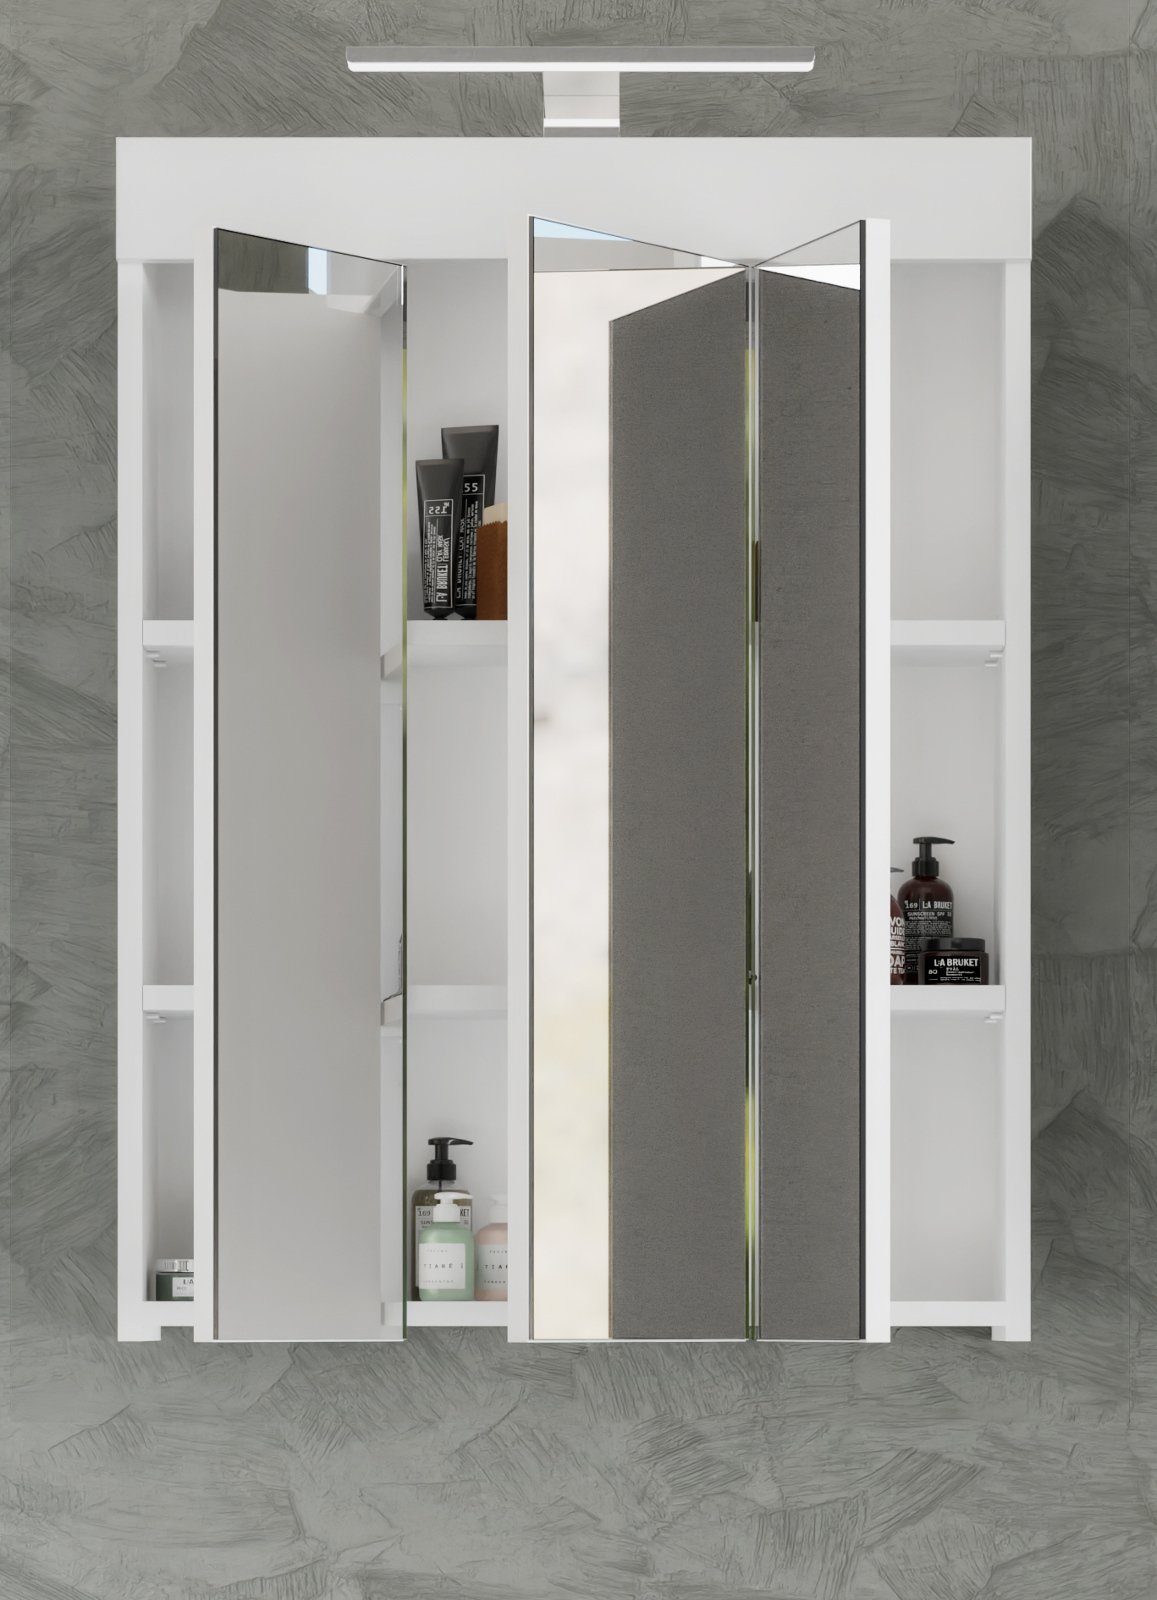 xonox.home 3-türig, weiß 60x79 (Spiegelschrank und inklusive Steckdose Badezimmerspiegelschrank cm, Hochglanz) LED-Beleuchtung Snow